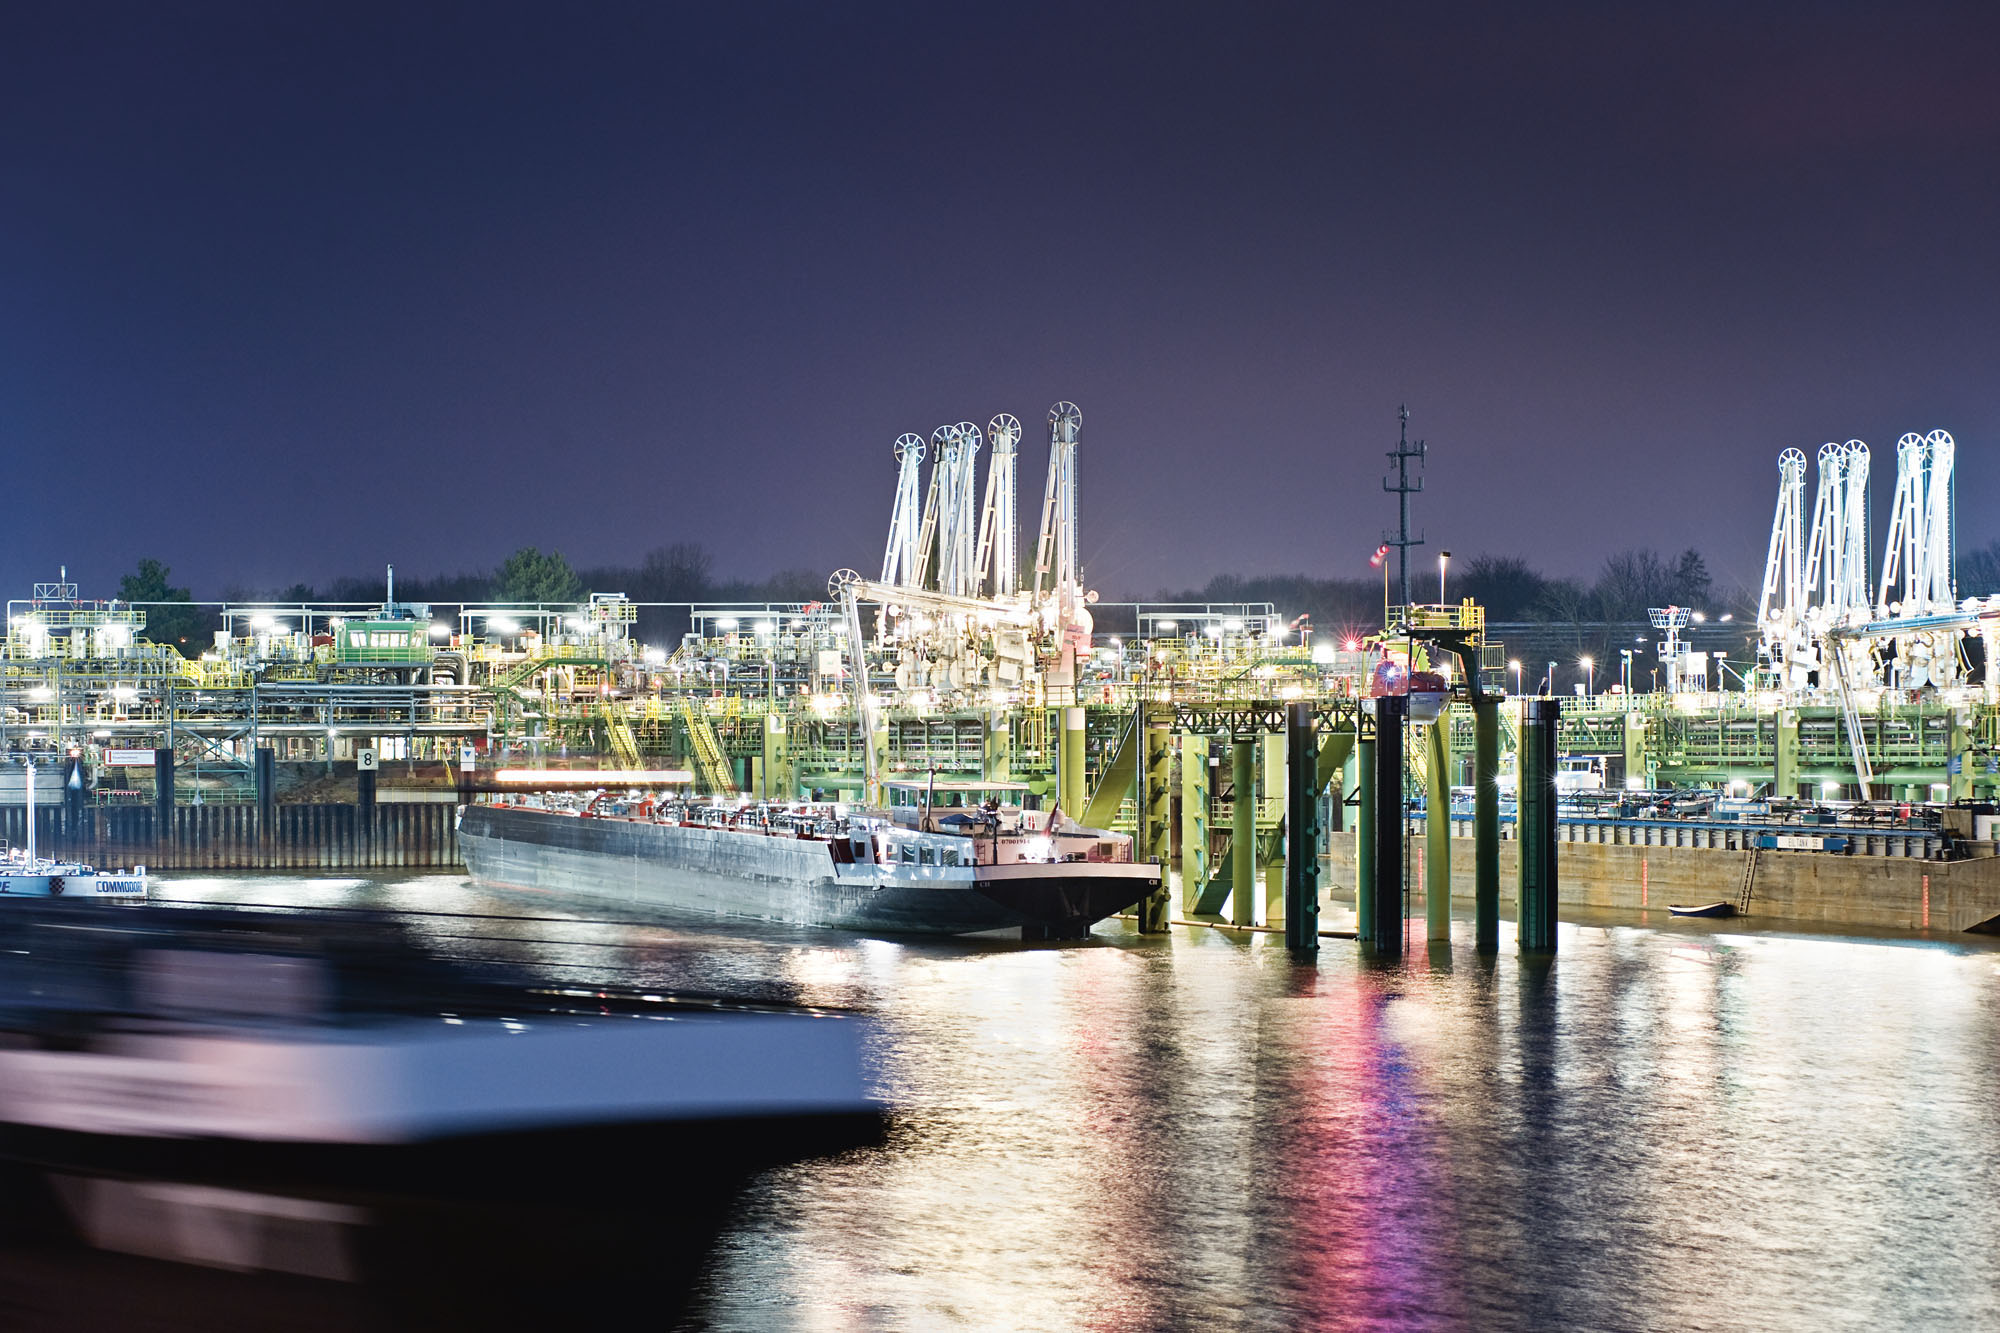 Met Imperial krijgt het Keulse havenbedrijf HGK een kwart van de Duitse binnenvaart in handen. (Foto HGK)